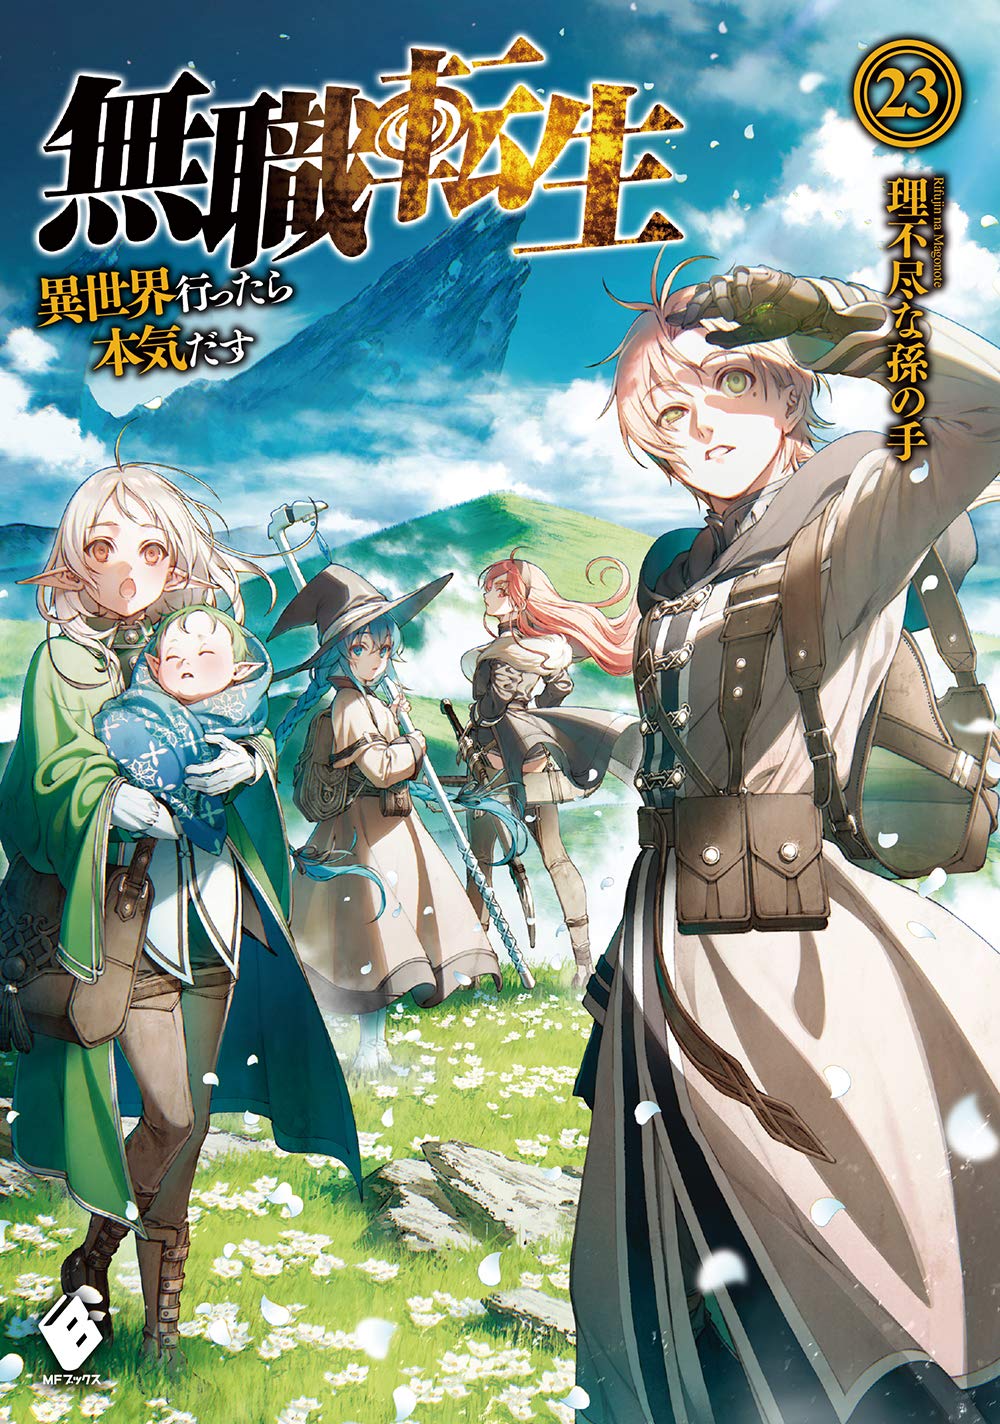 Mushoku Tensei: Jobless Reincarnation Japanese light novel volume 23 front cover